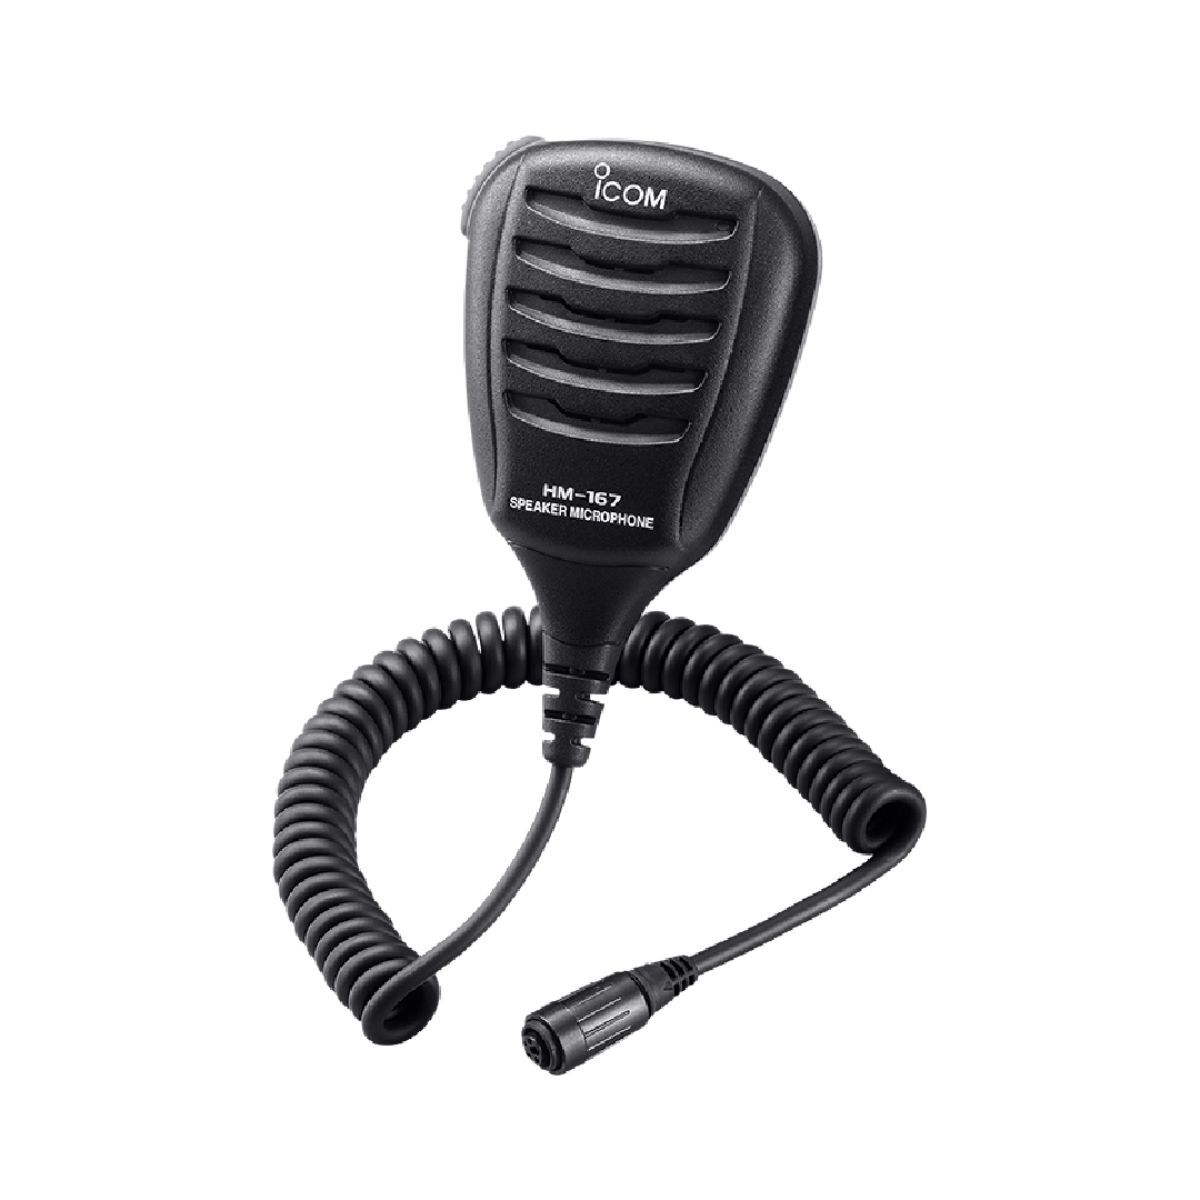 ICOM HM-167 Waterproof Speaker Microphone